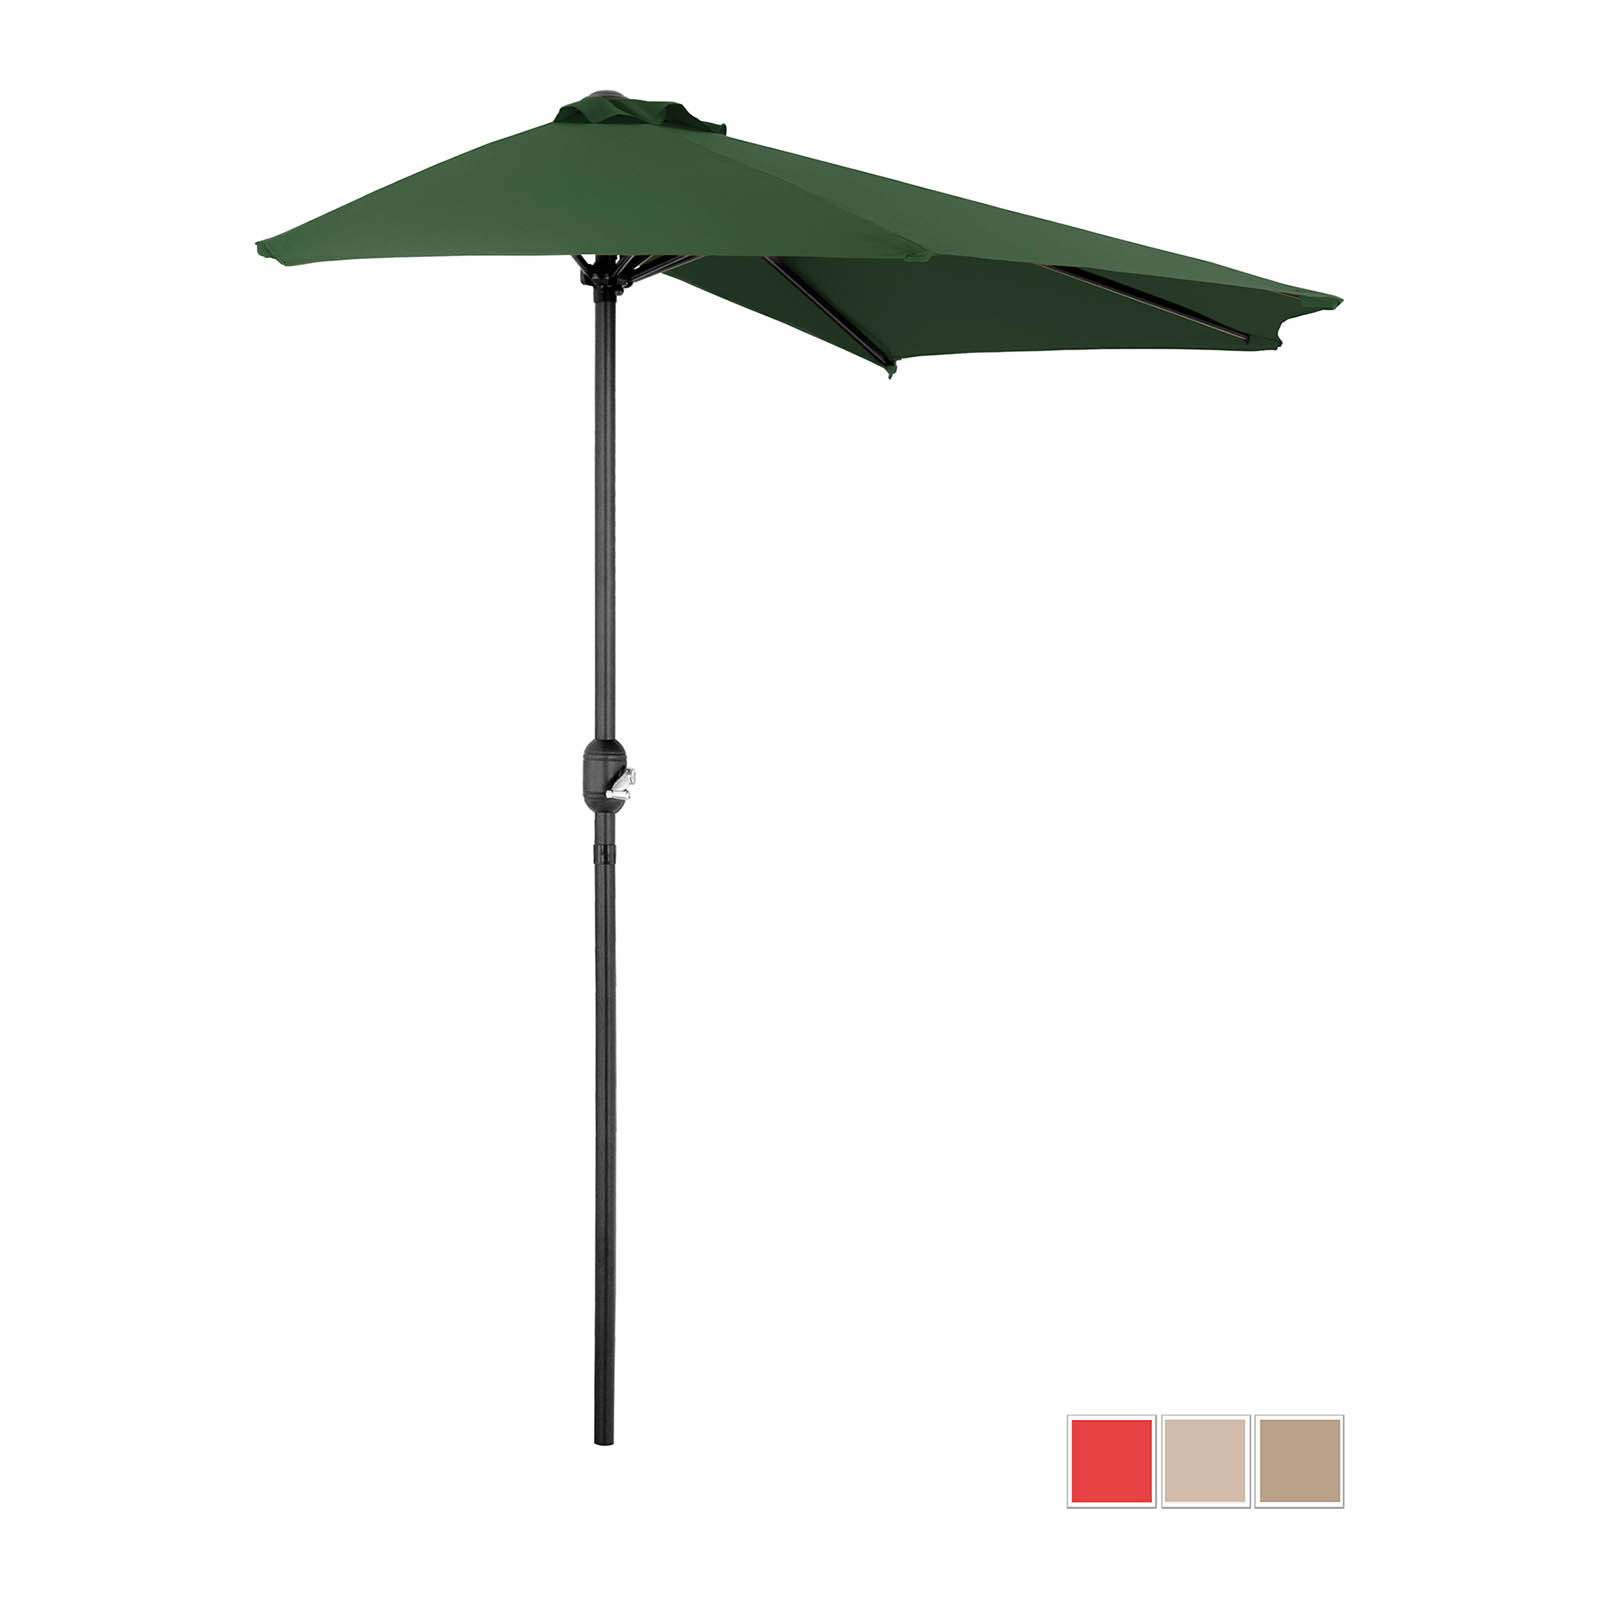 Половин чадър - зелен - петоъгълен - 270 x 135 см